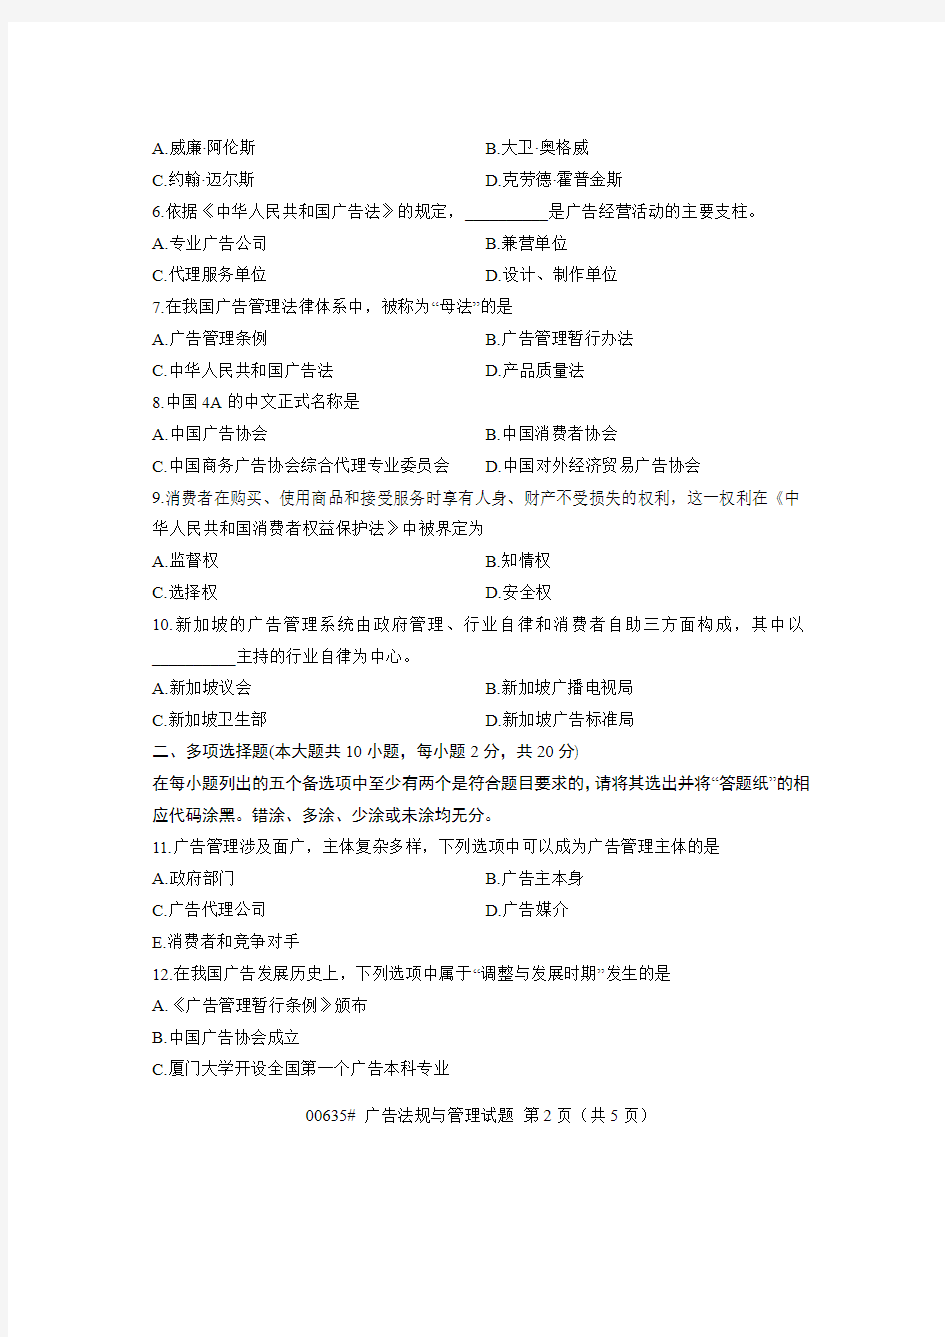 00635广告法规与管理 浙江省13年10月自考试题